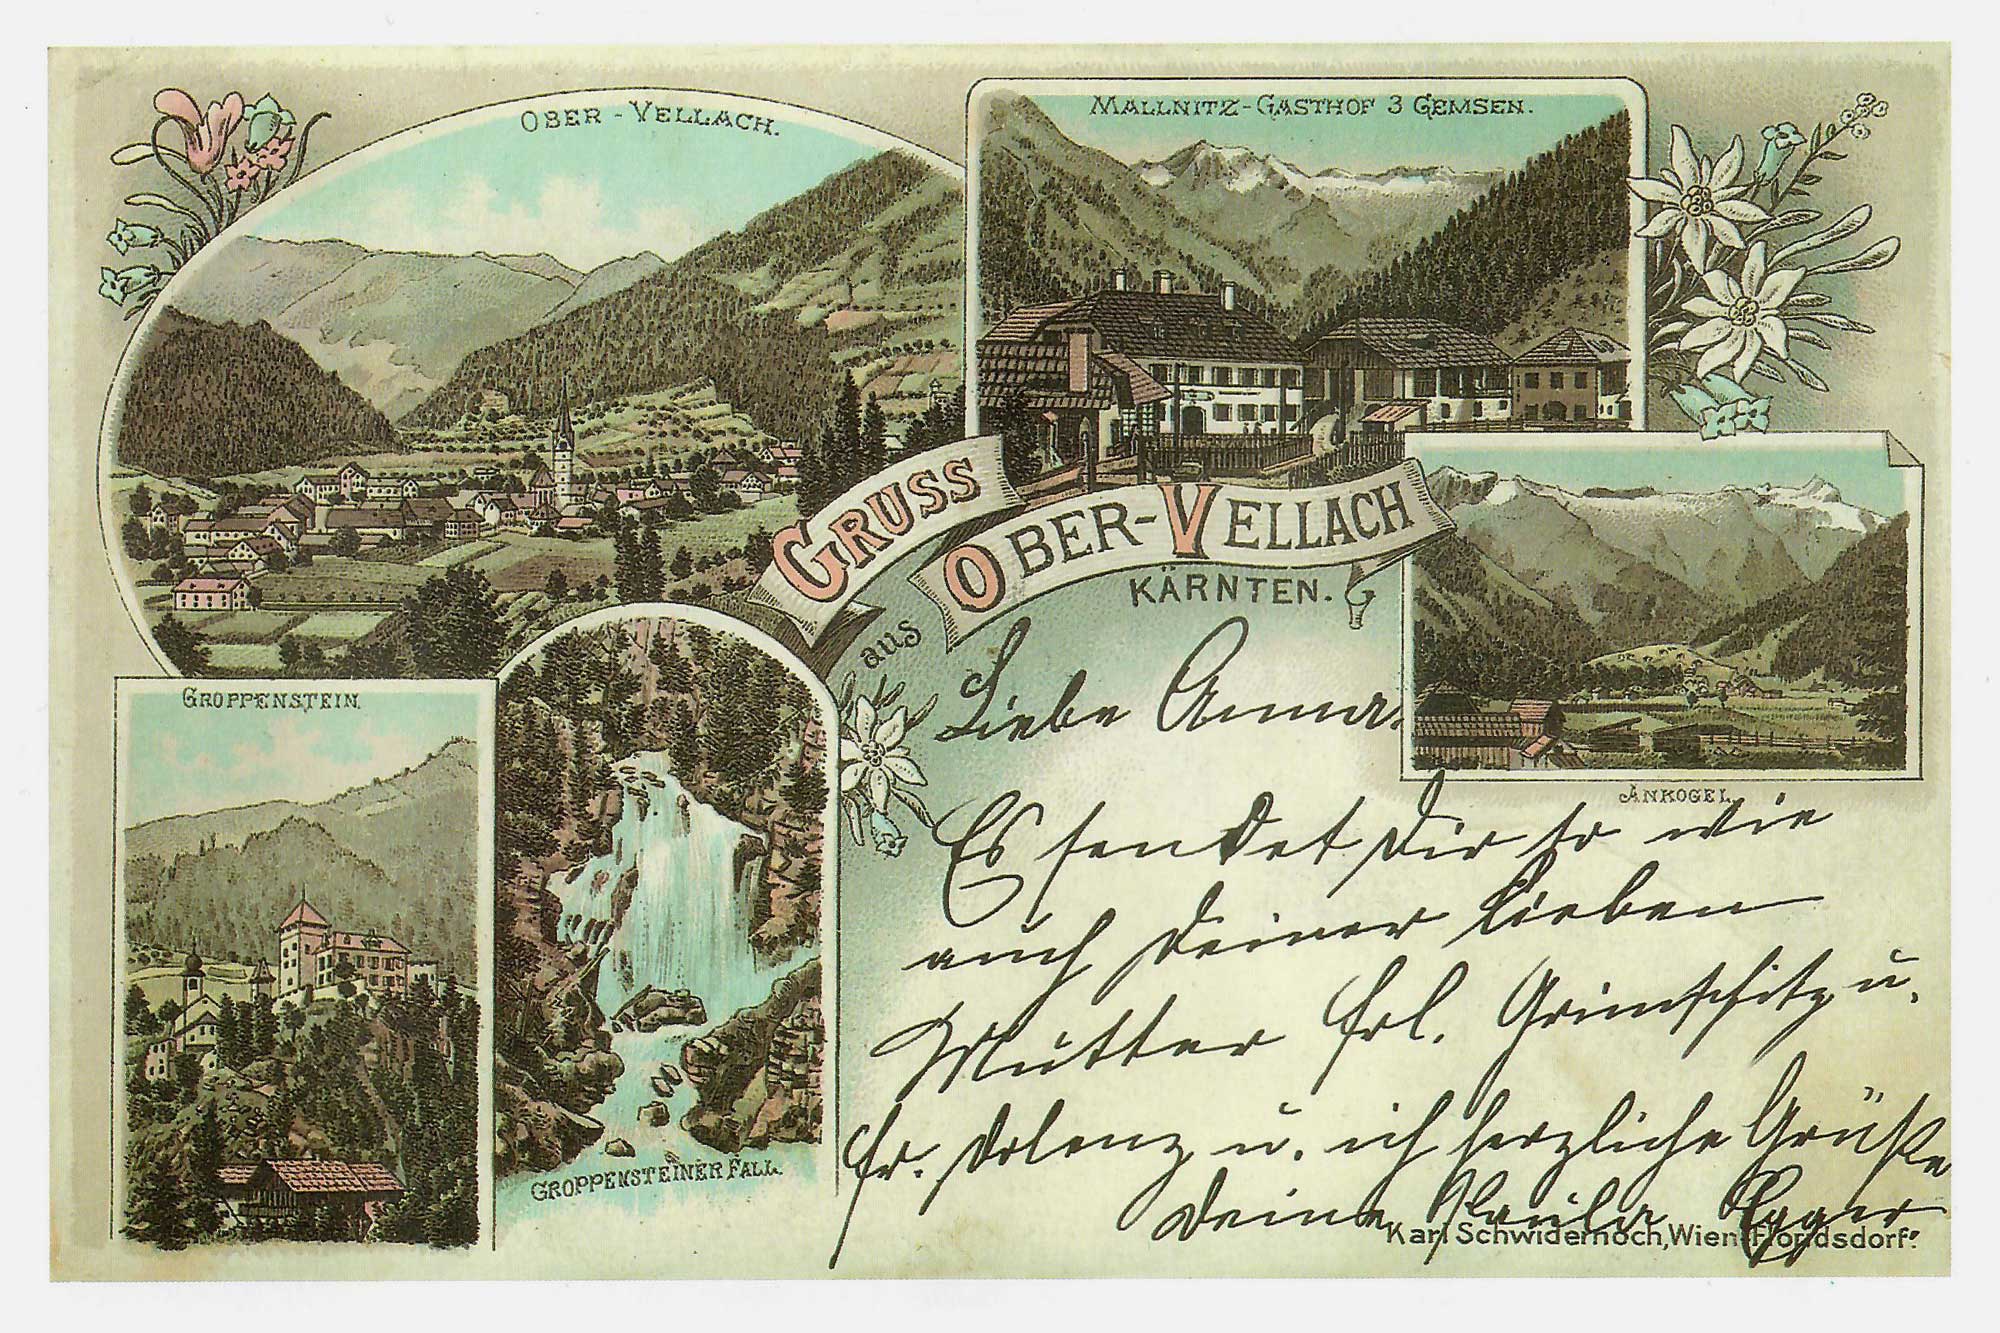 Grußpostkarte aus Obervellach, ca. 1930